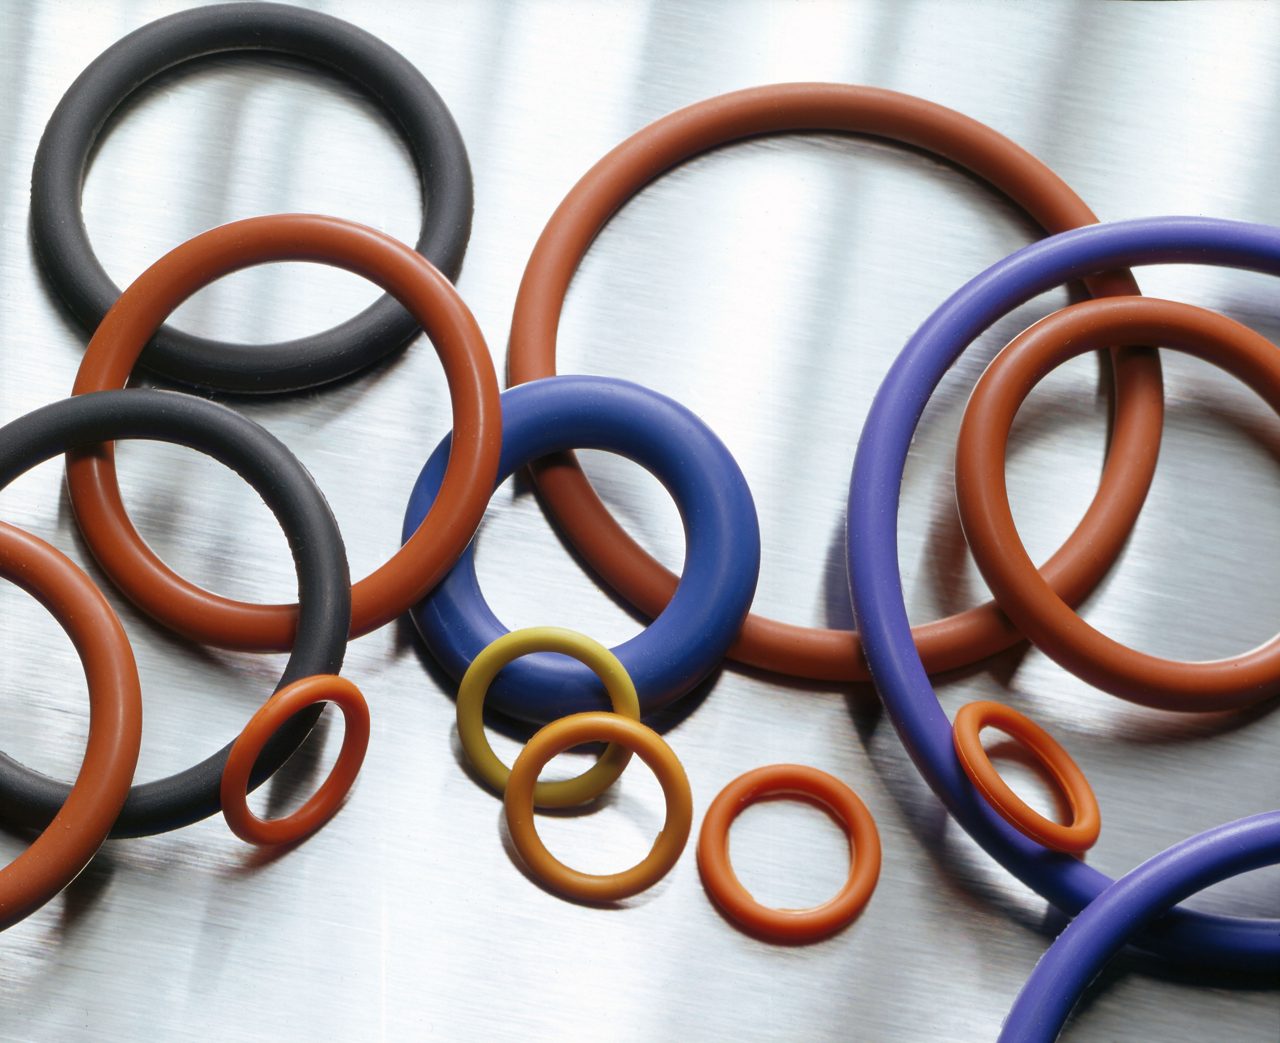 O-rings feitos de borracha de fluorossilicone sobre fundo metálico